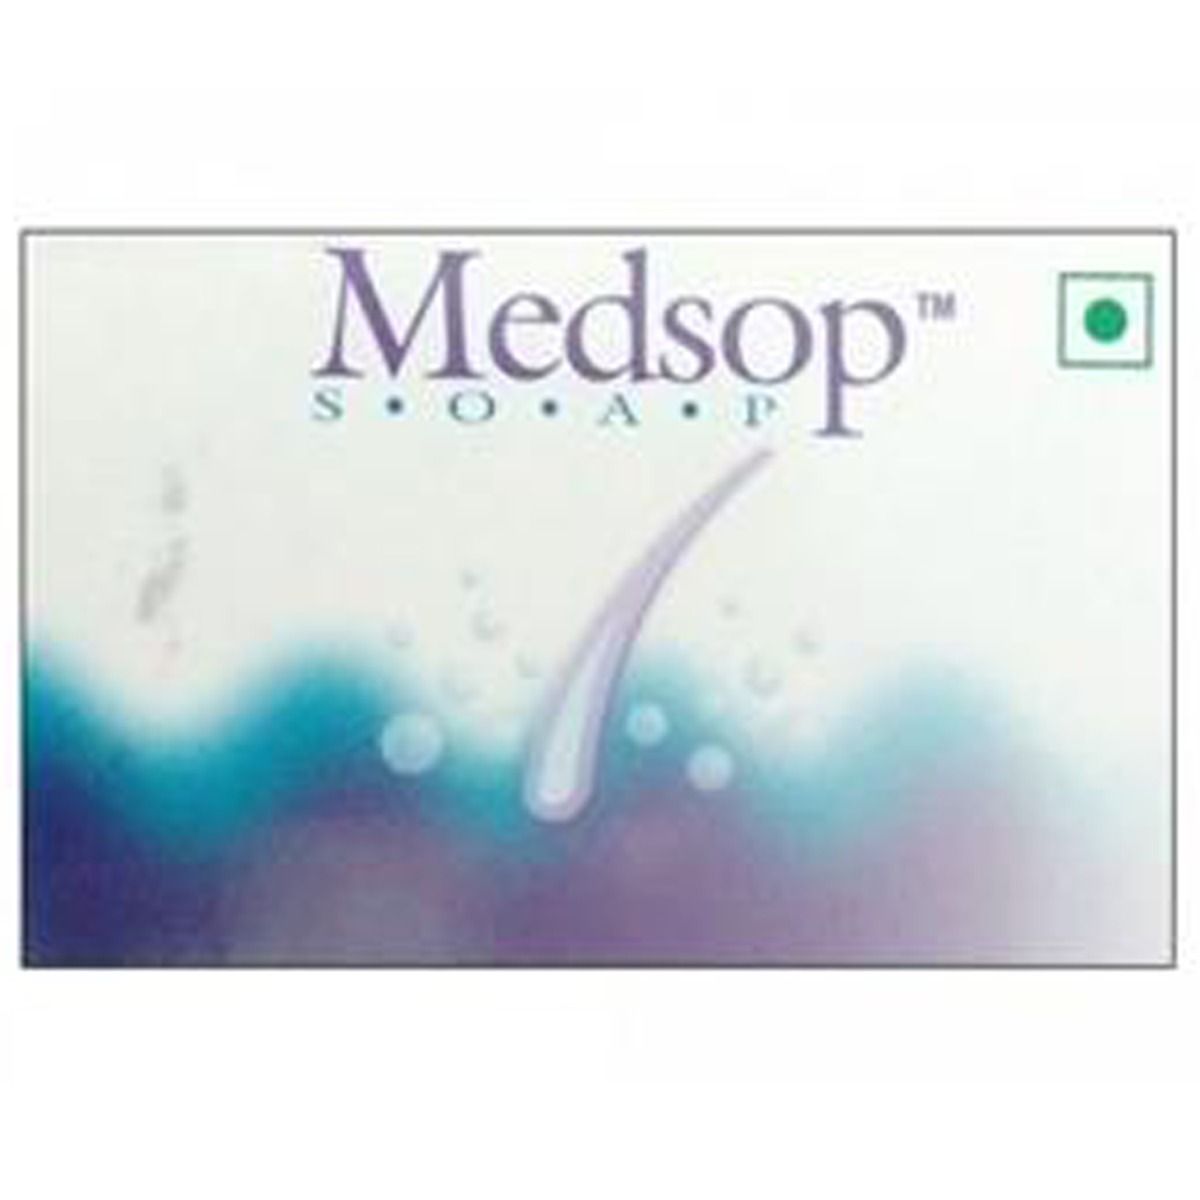 Medsop Soap, 100 gm, Pack of 1 